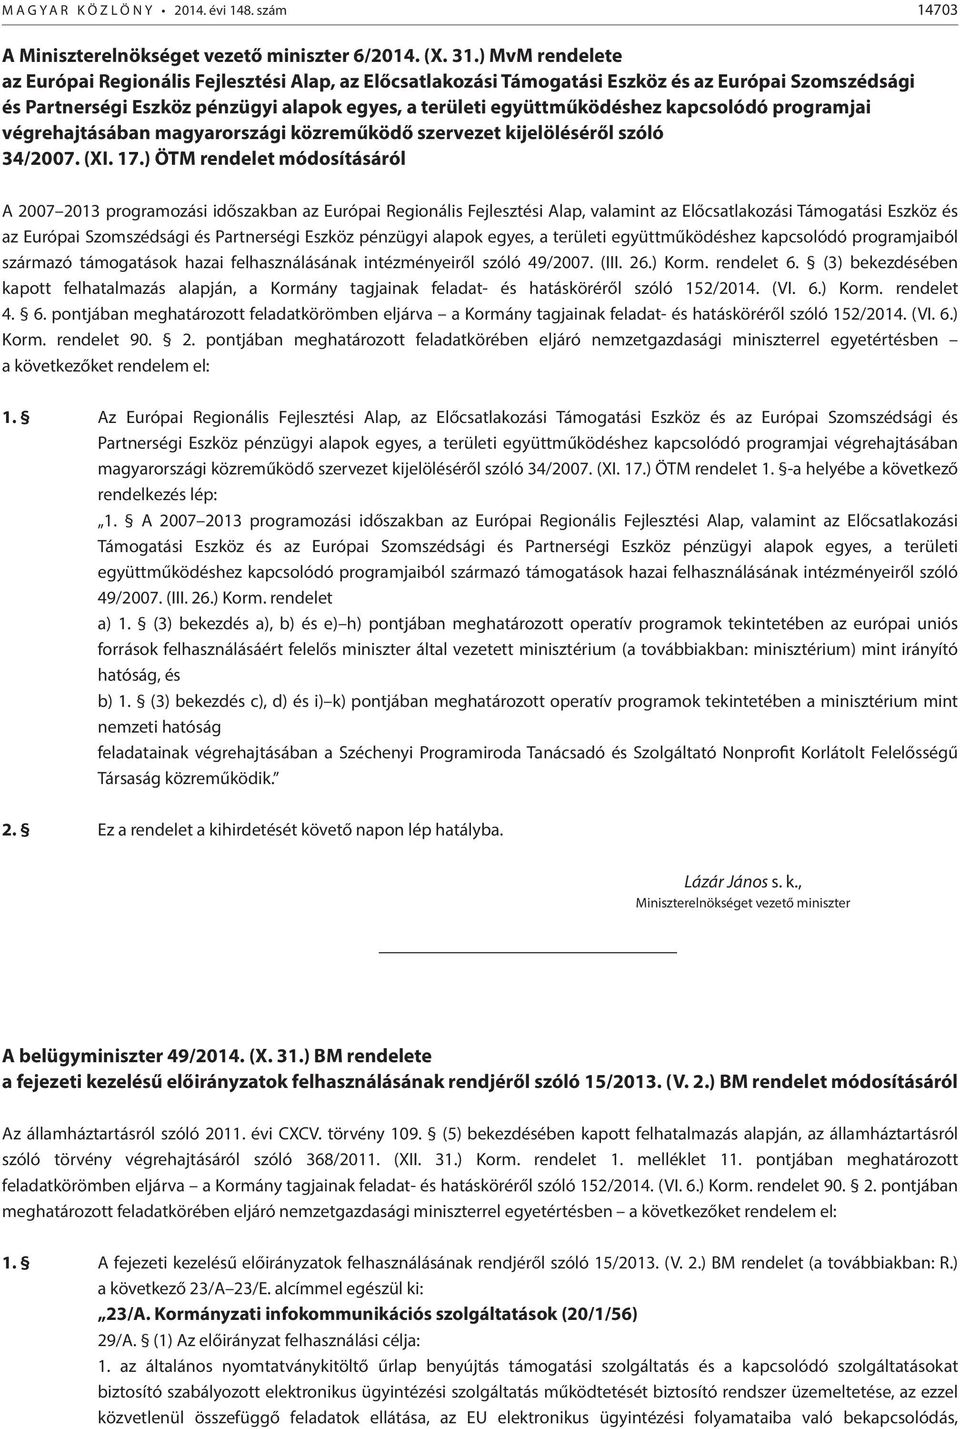 kapcsolódó programjai végrehajtásában magyarországi közreműködő szervezet kijelöléséről szóló 34/2007. (XI. 17.